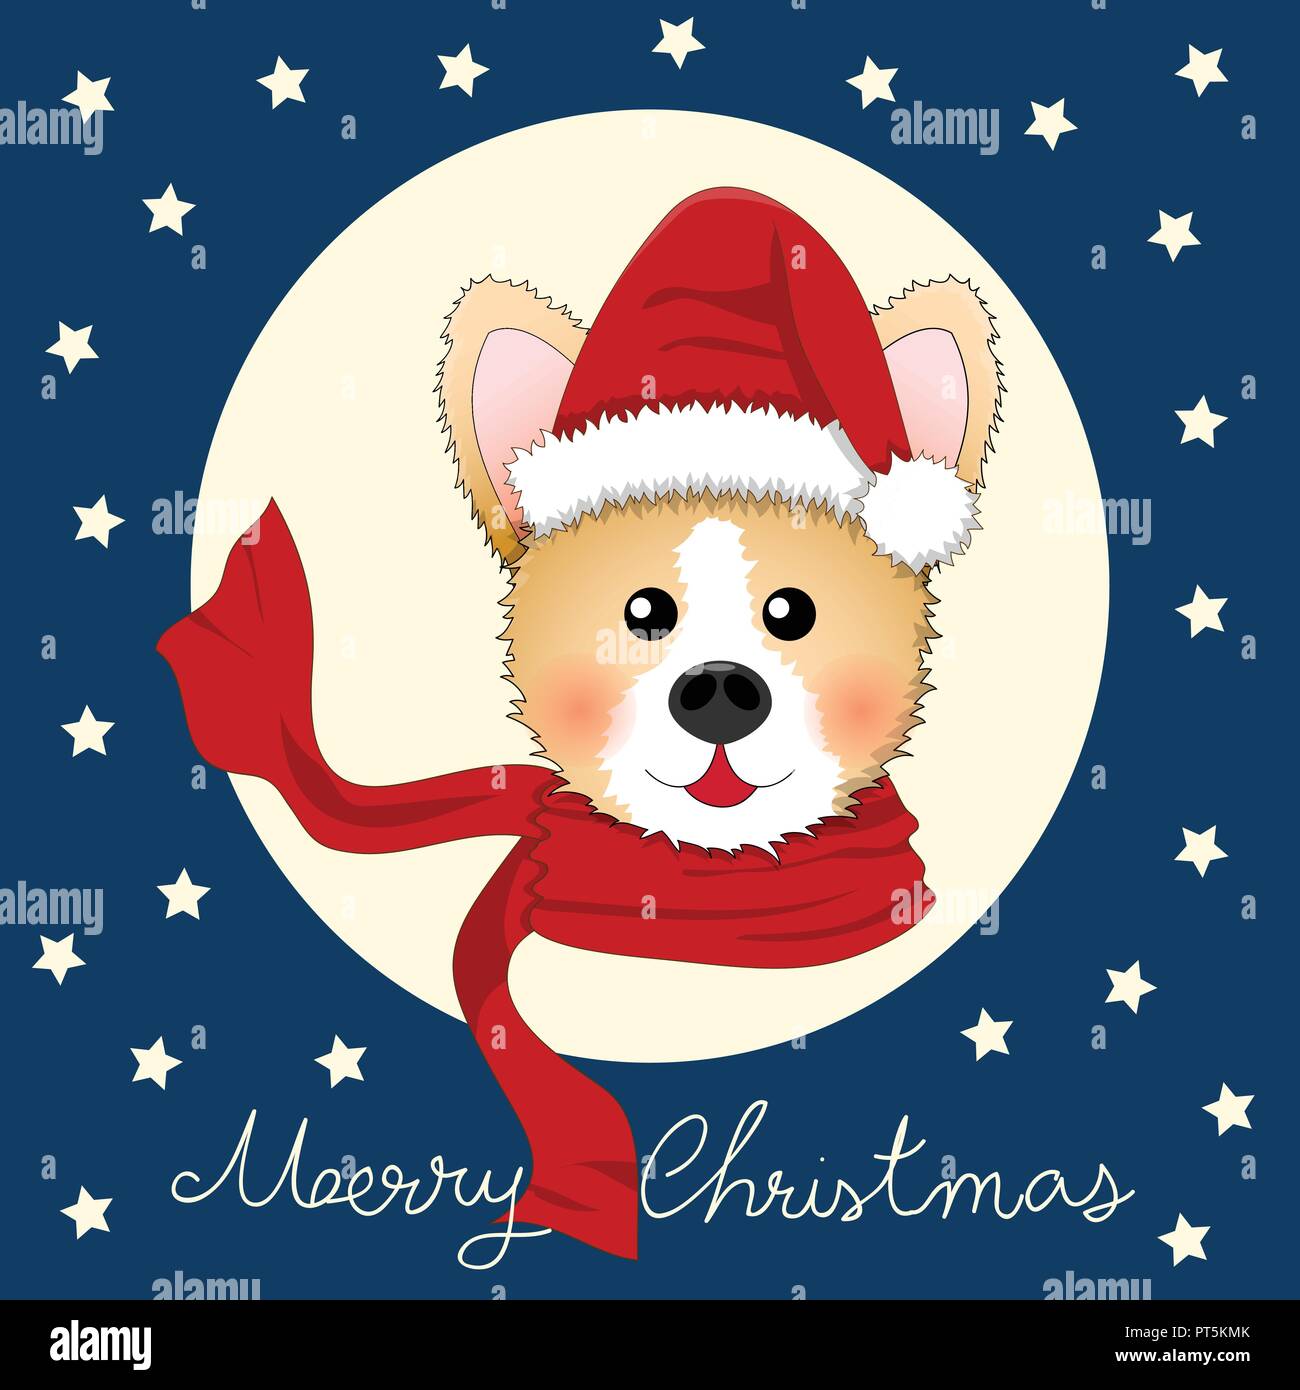 Babbo Natale Blu.Corgi Babbo Natale Con Sciarpa Rossa Su Blu Natale Biglietto Di Auguri Illustrazione Vettoriale Immagine E Vettoriale Alamy